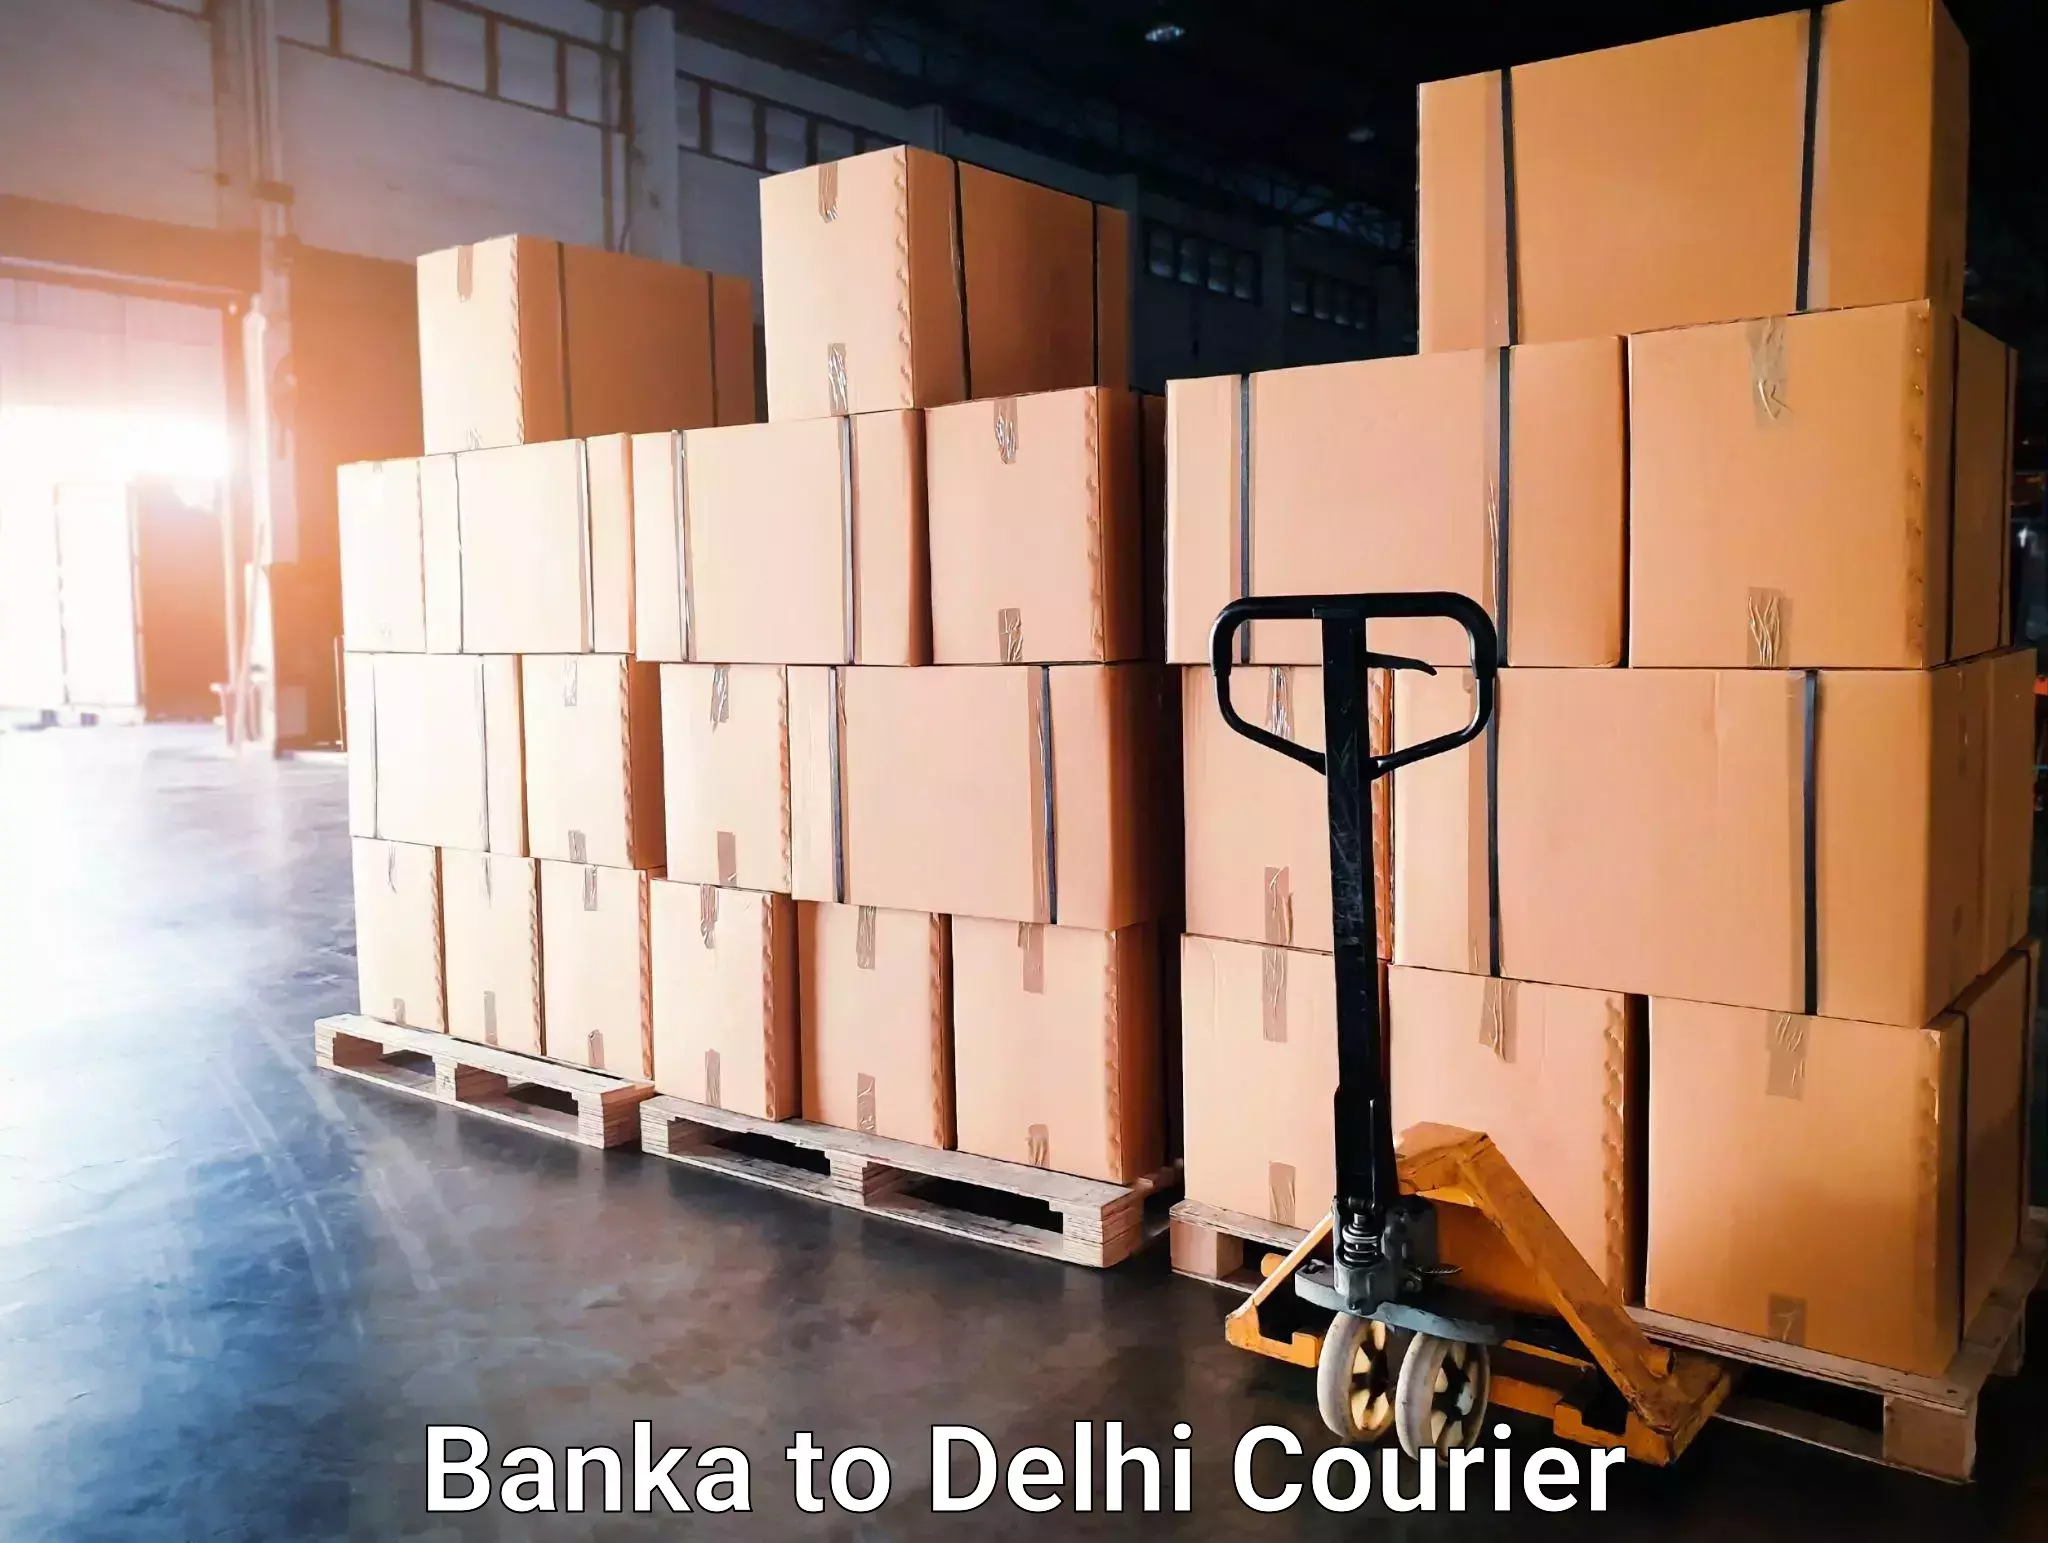 Furniture delivery service Banka to Delhi